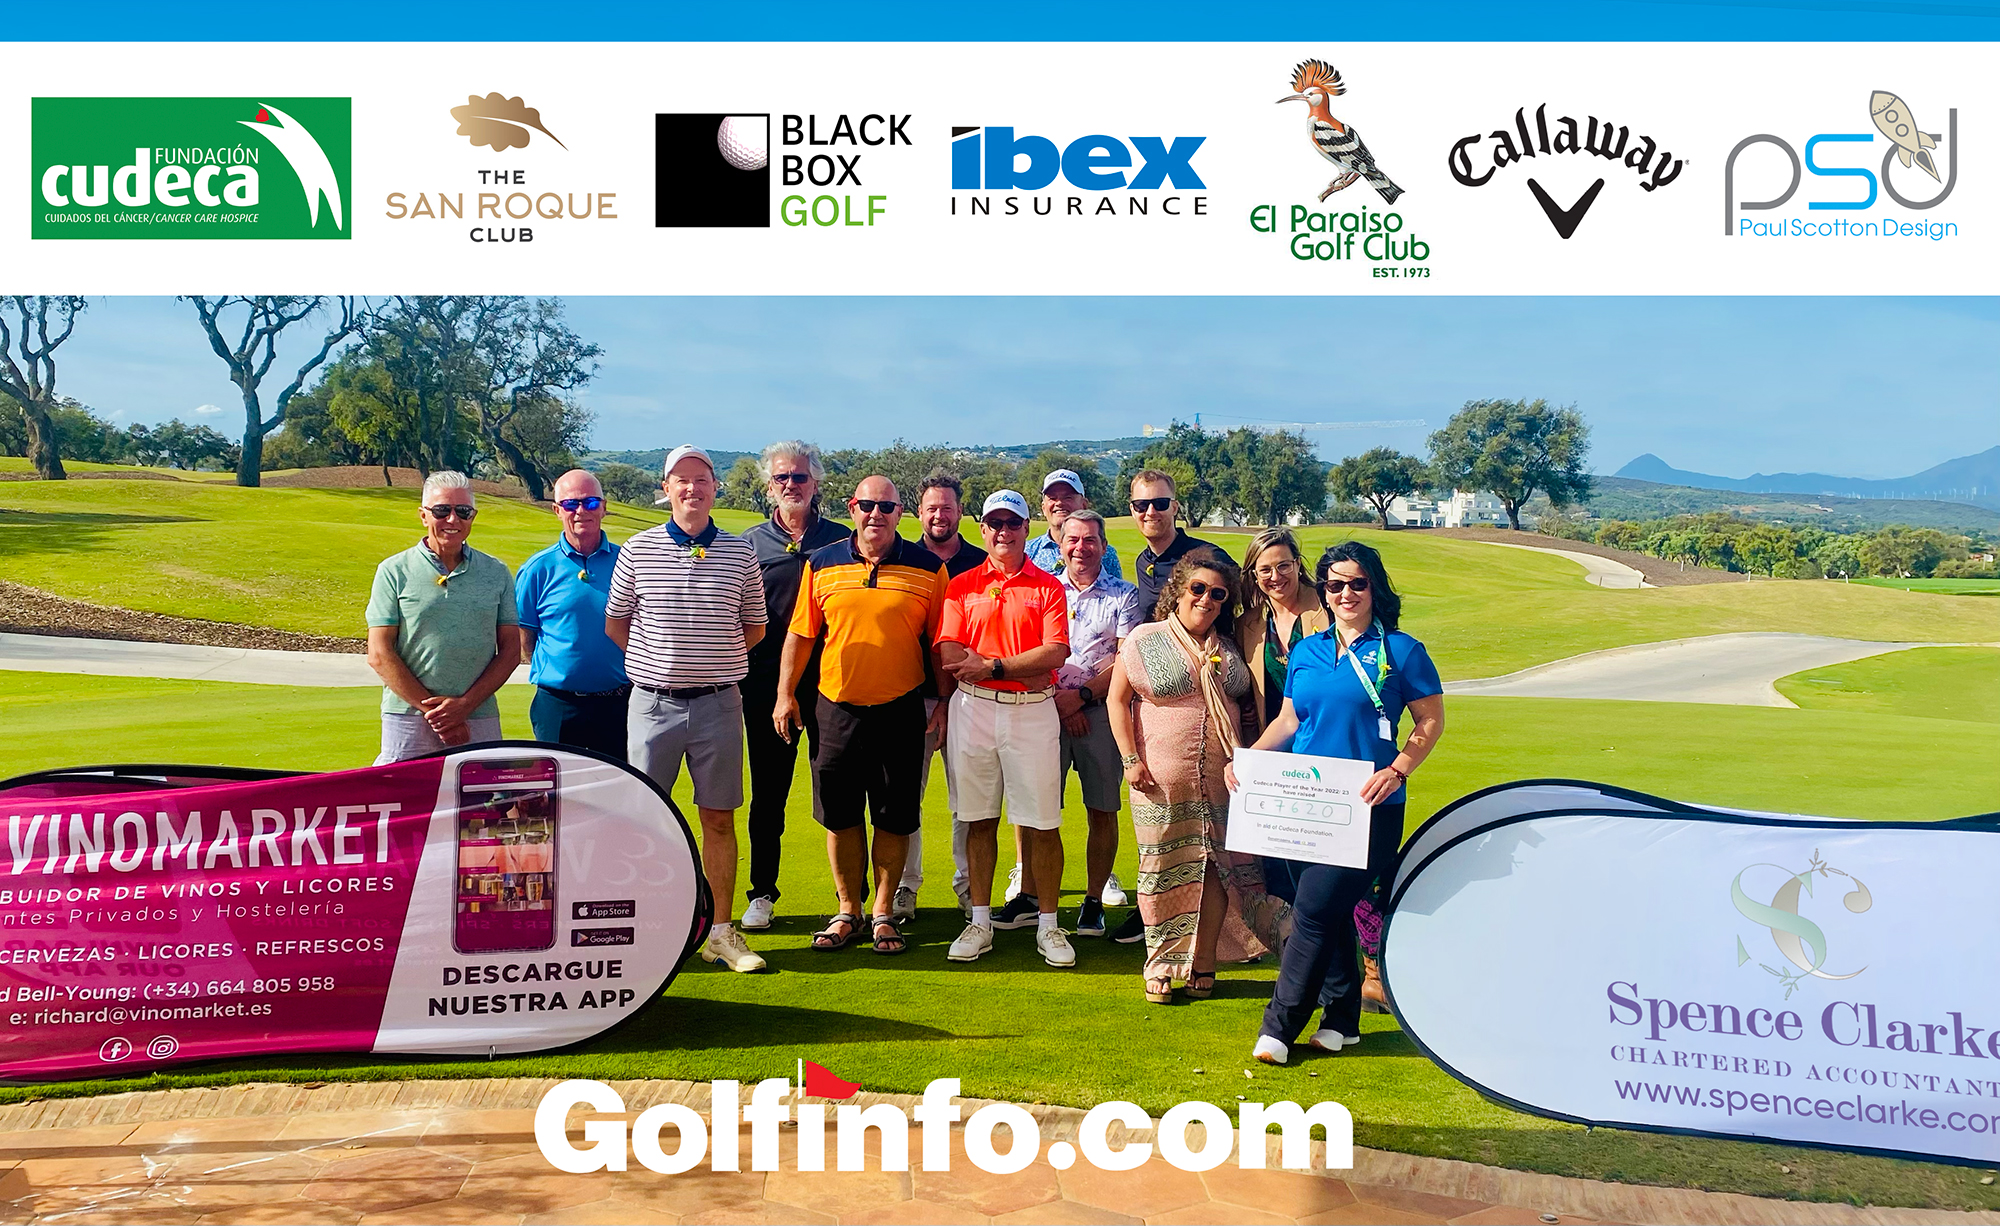 El evento Cudeca Player of the Year 2022/ 23  impulsado por Golfinfo.com ha recaudado 7.620 euros para los cuidados paliativos que presta la Fundación Cudeca  en la provincia de Málaga